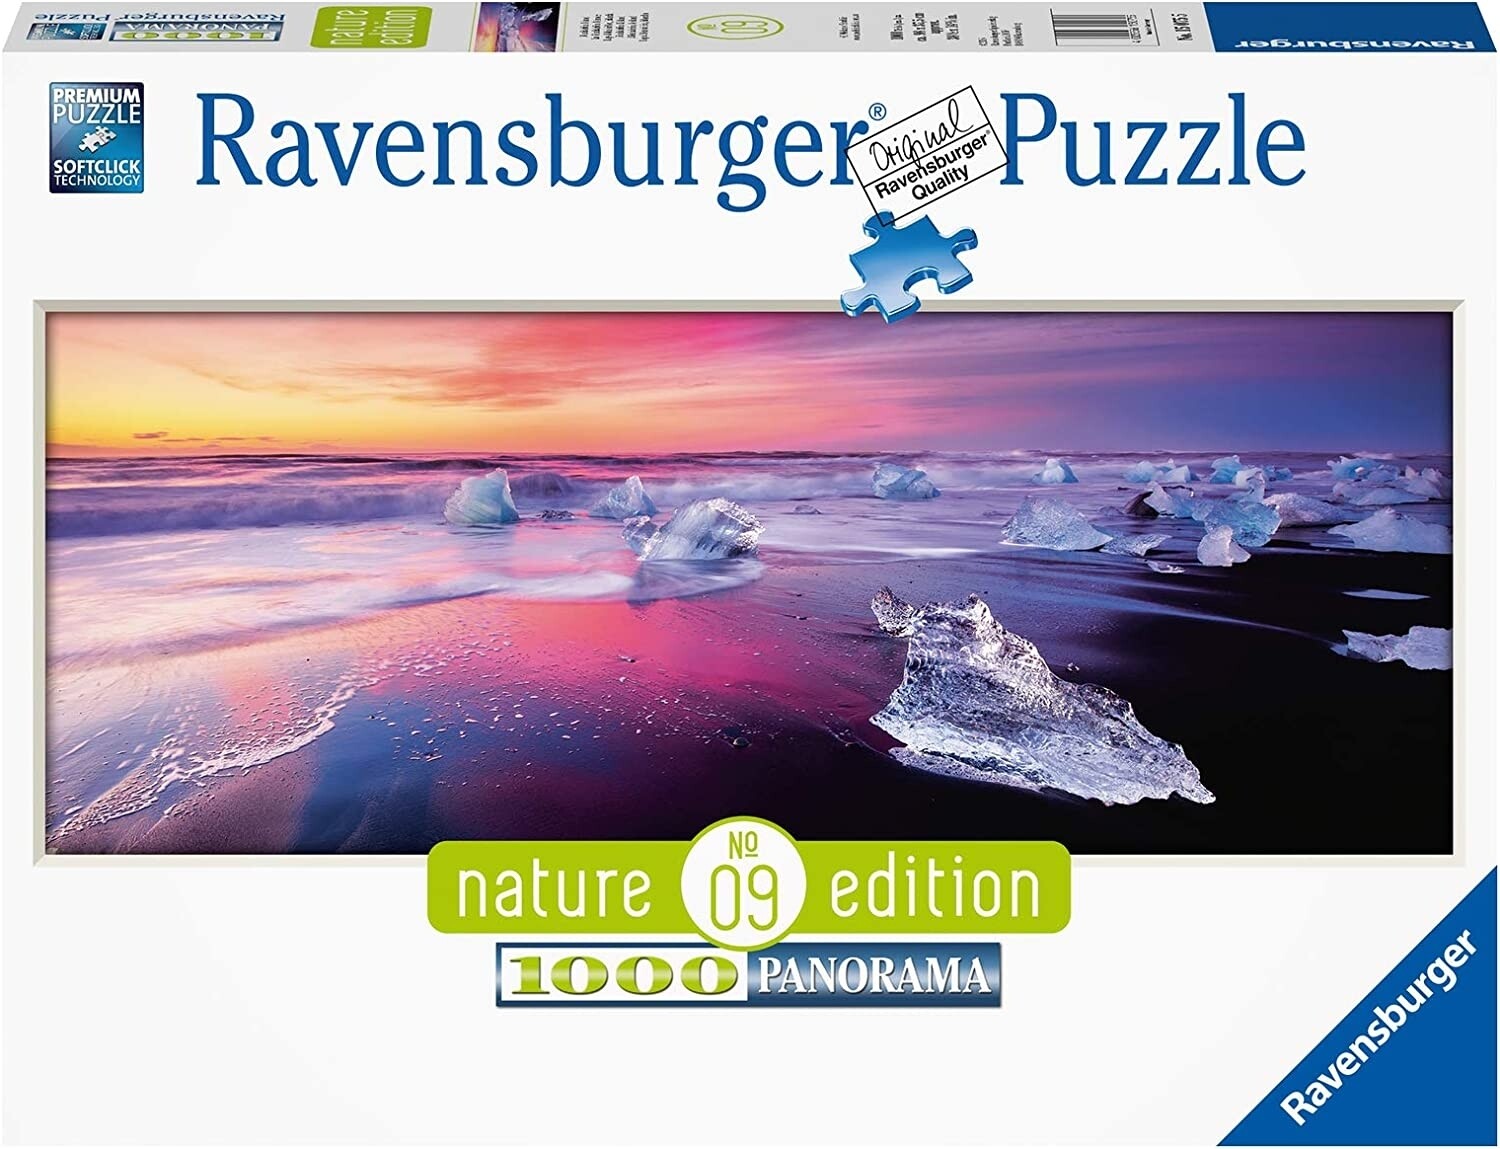 Ravensburger Puzzle 150755 - Jökulsárlón, Islanda 1000p.